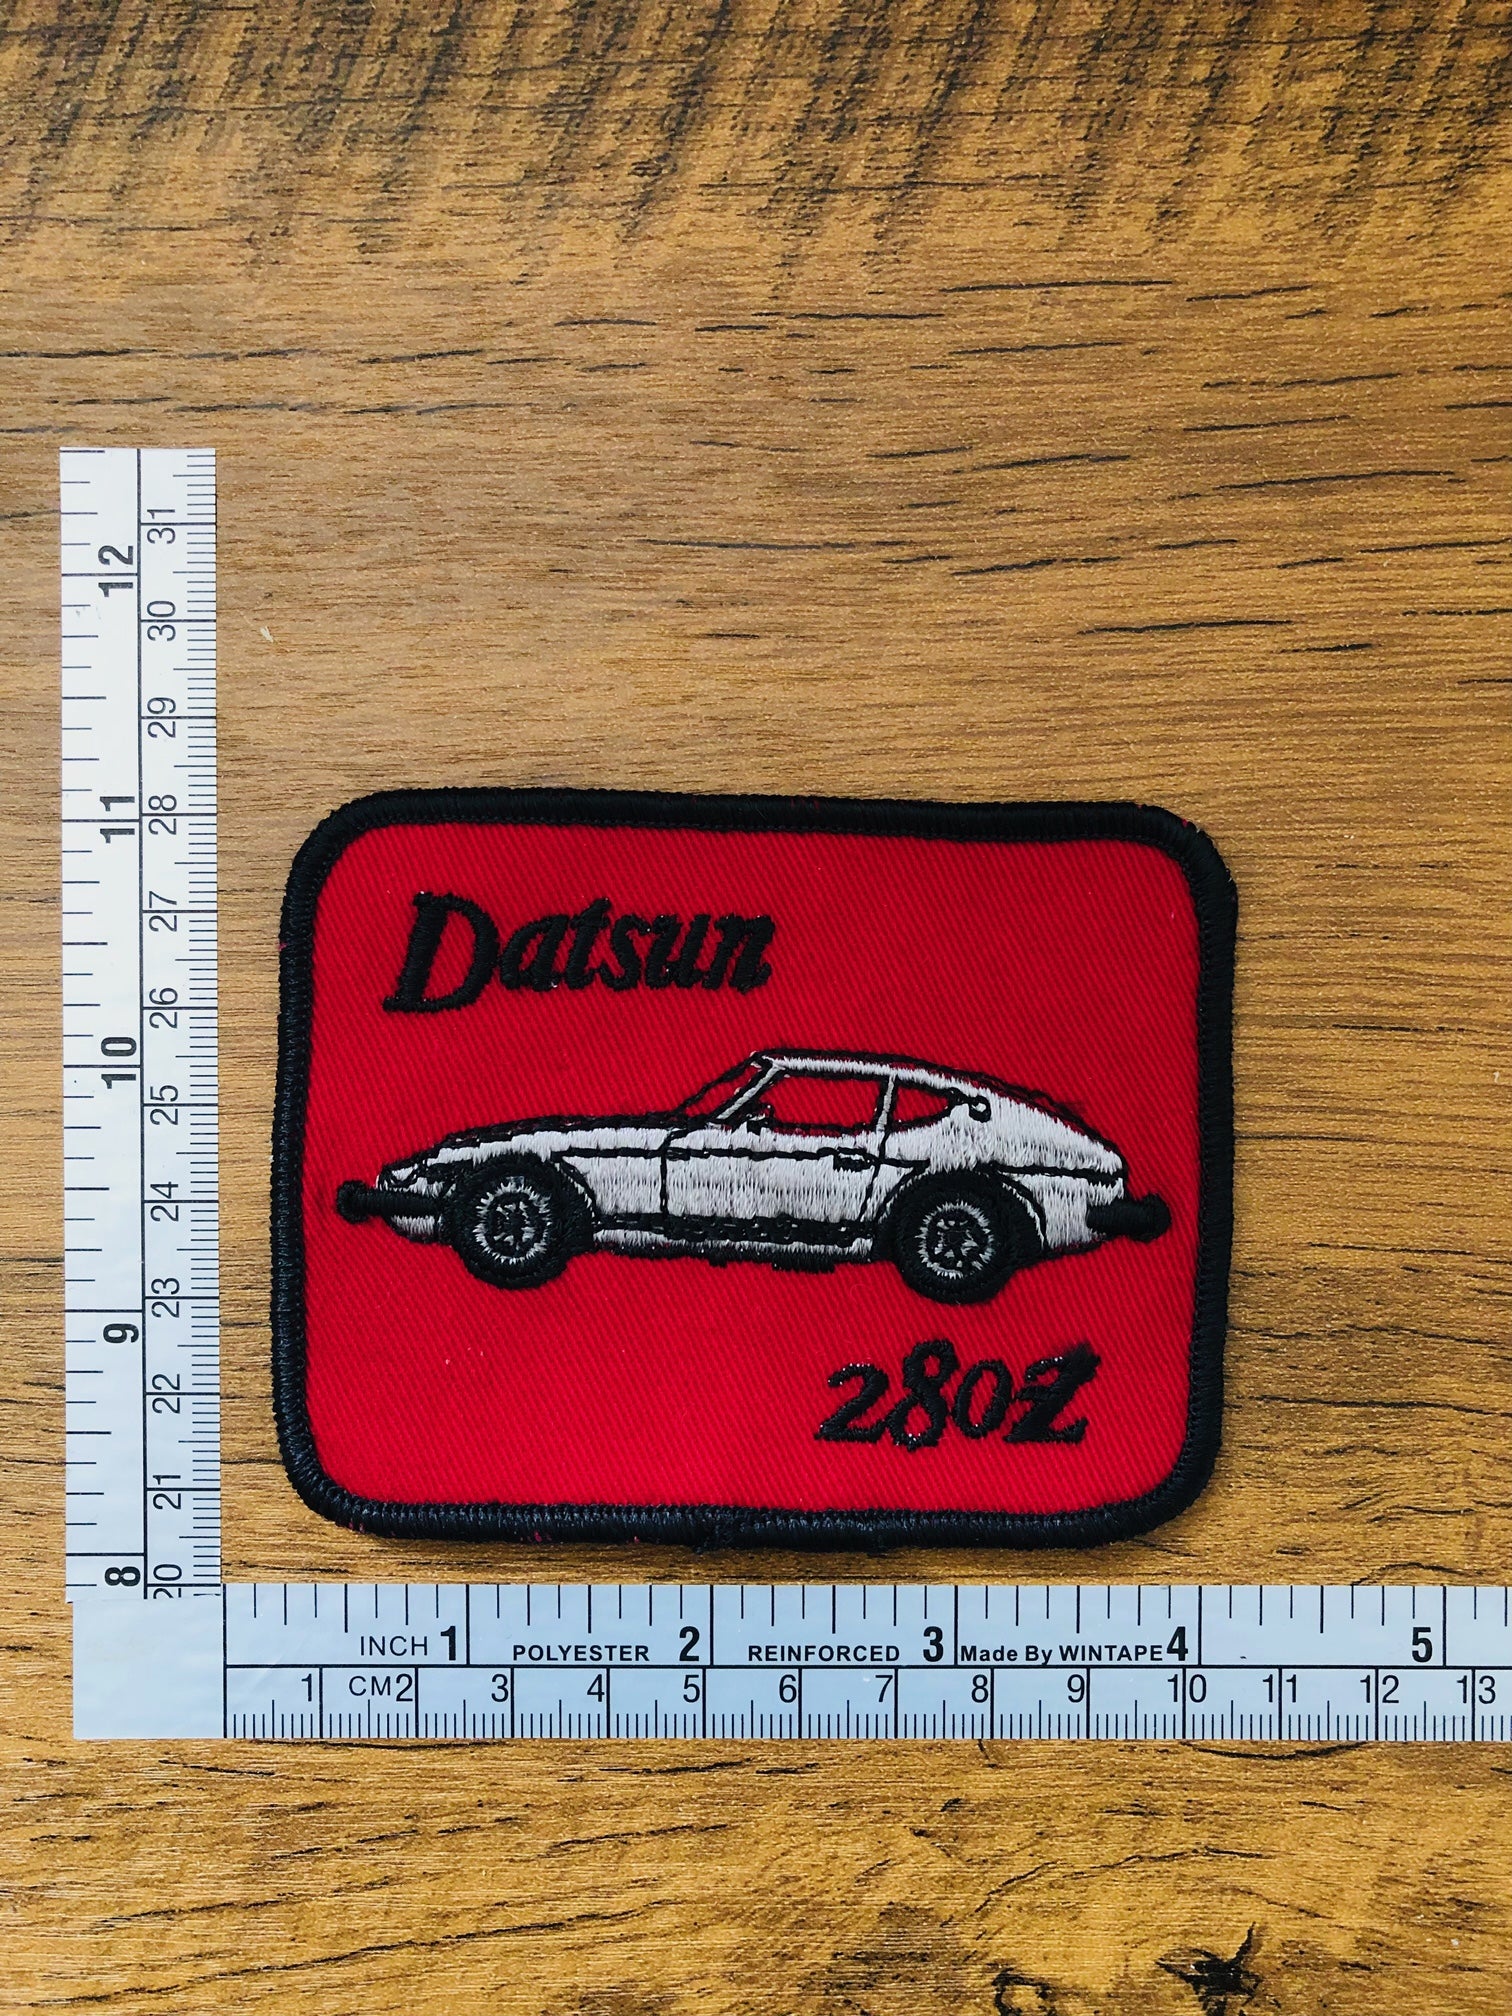 Vintage Datsun, Nissan, Cars, Vehicles, Automobiles